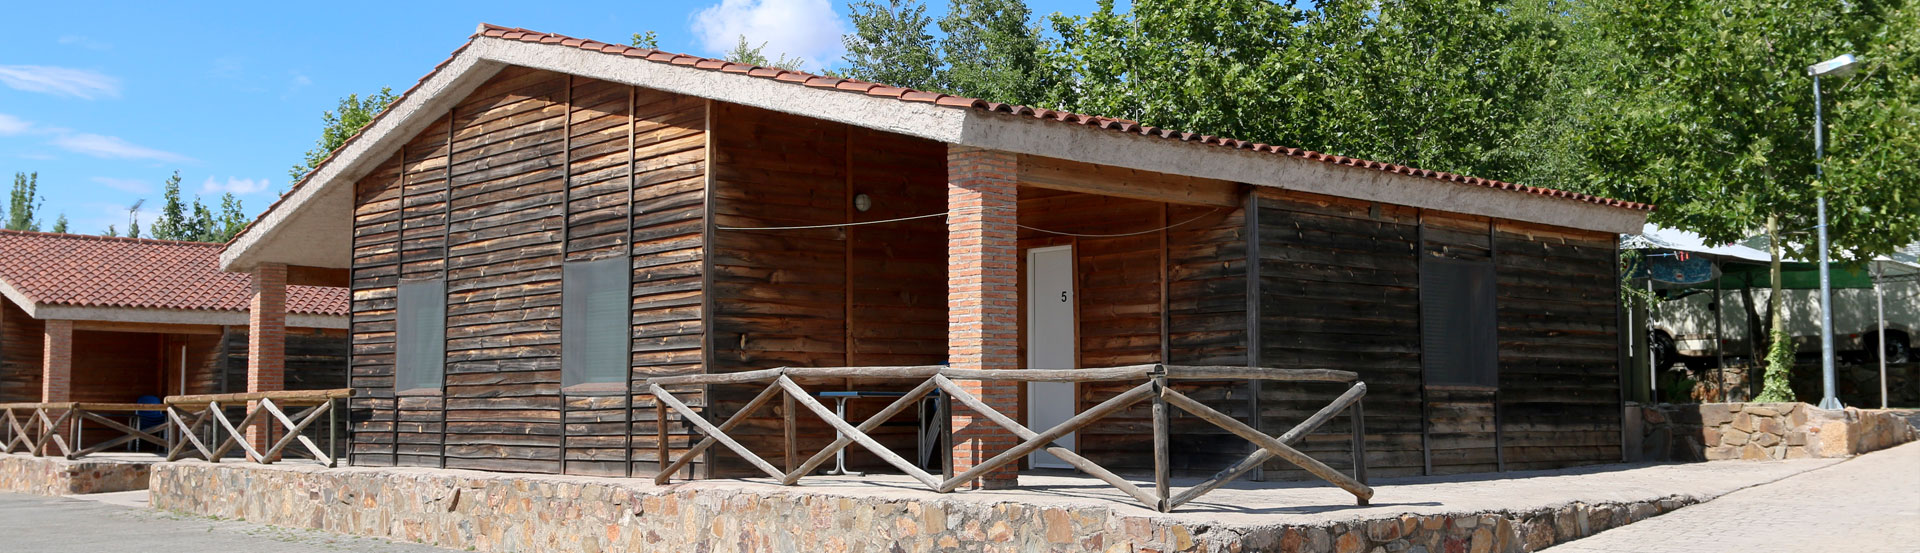 Ven a Conocer los Mejores Campings de Extremadura